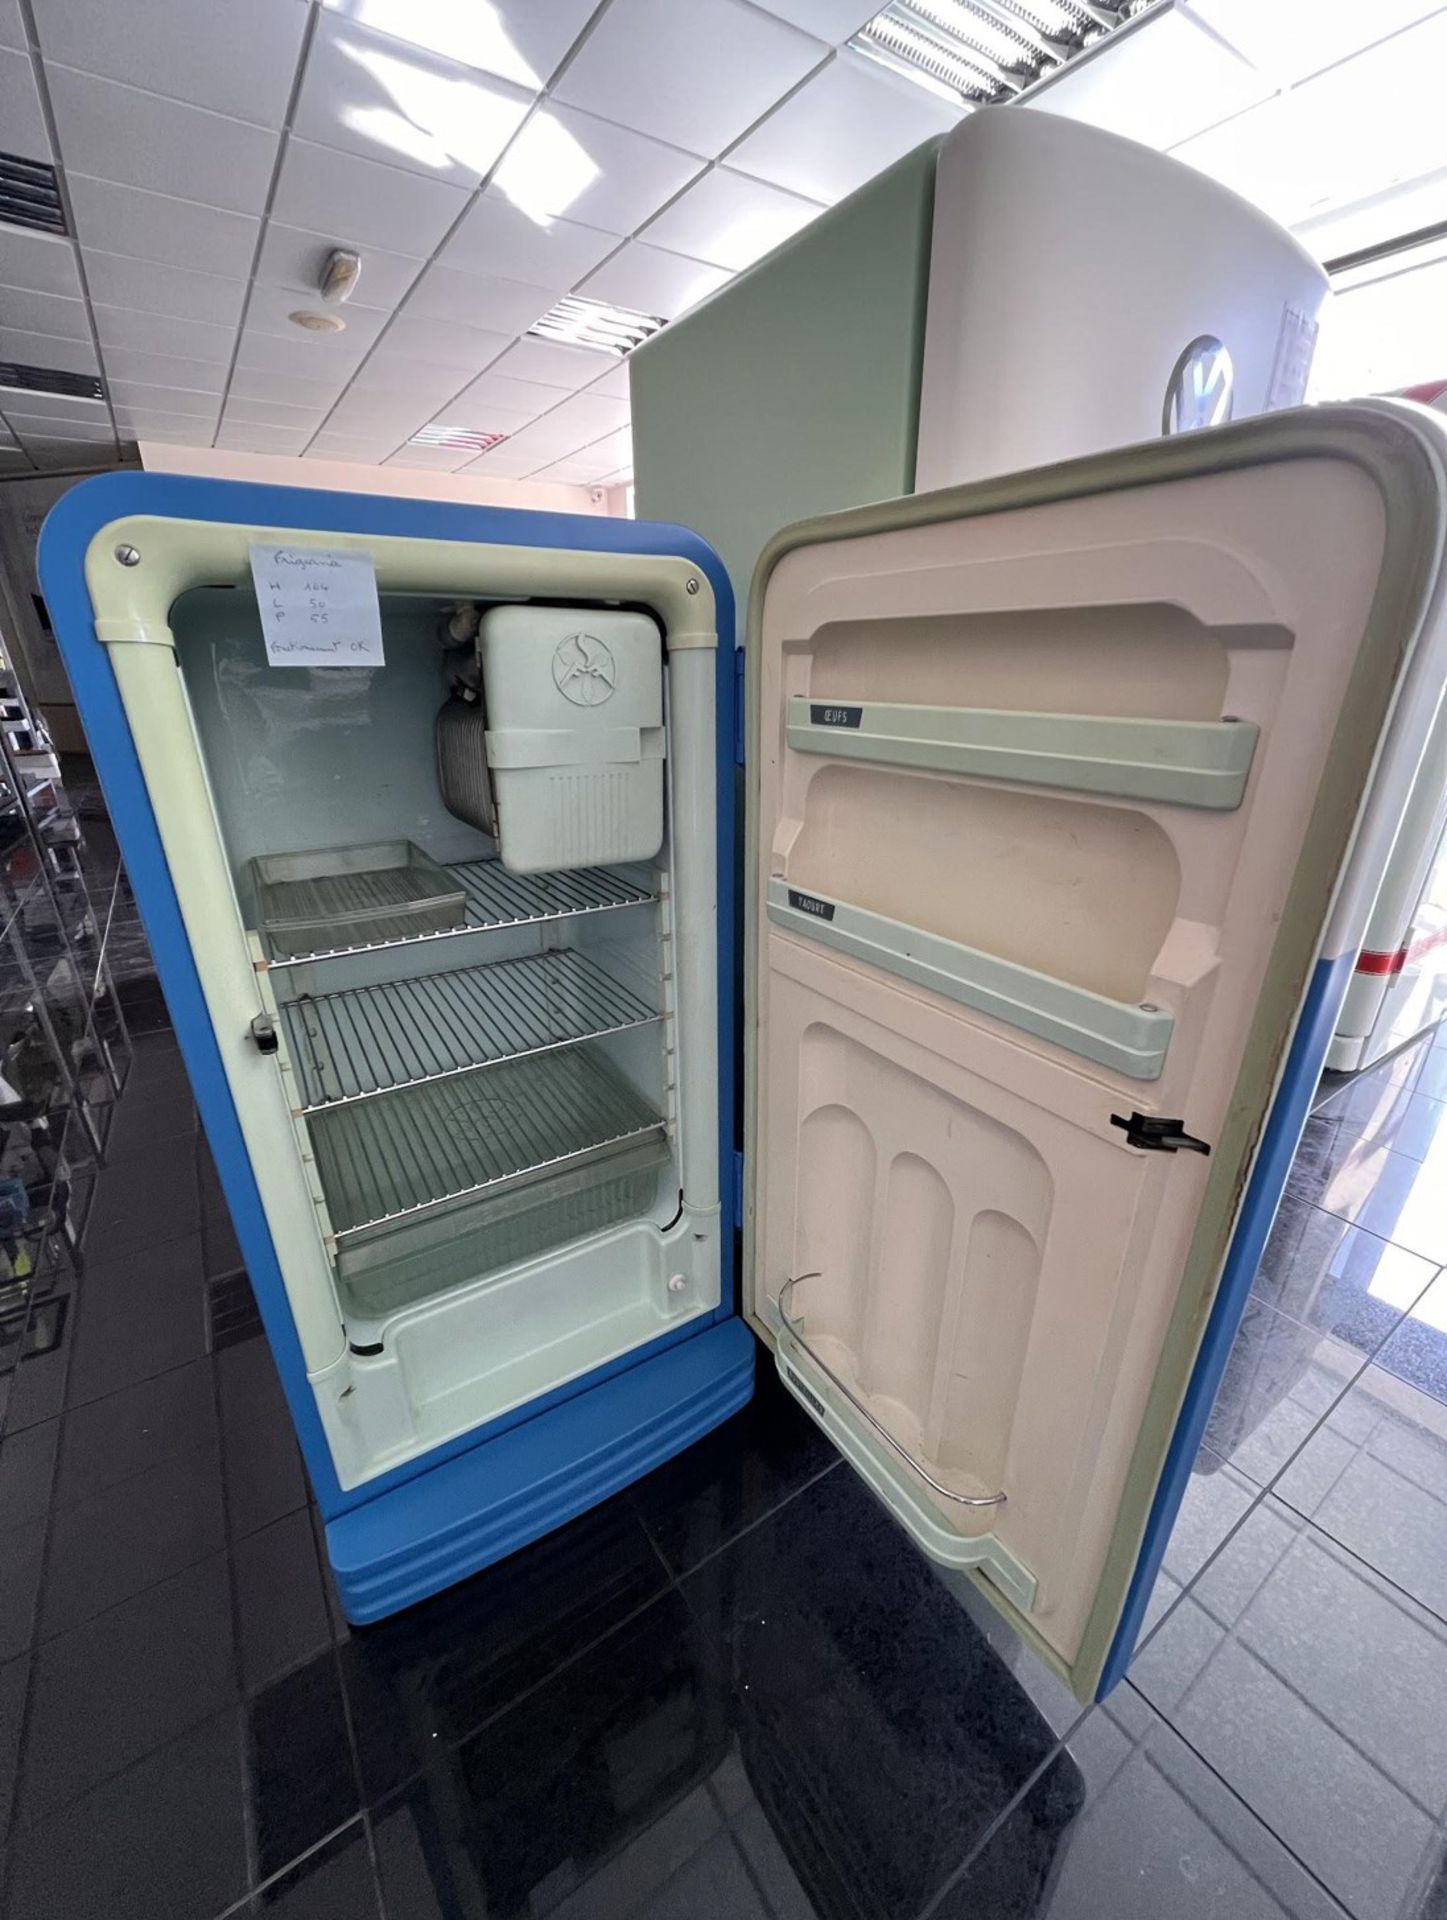 1957 Frigeavia Volkswagen Refrigerator in Matt Cream & Blue Colors  - Image 2 of 2